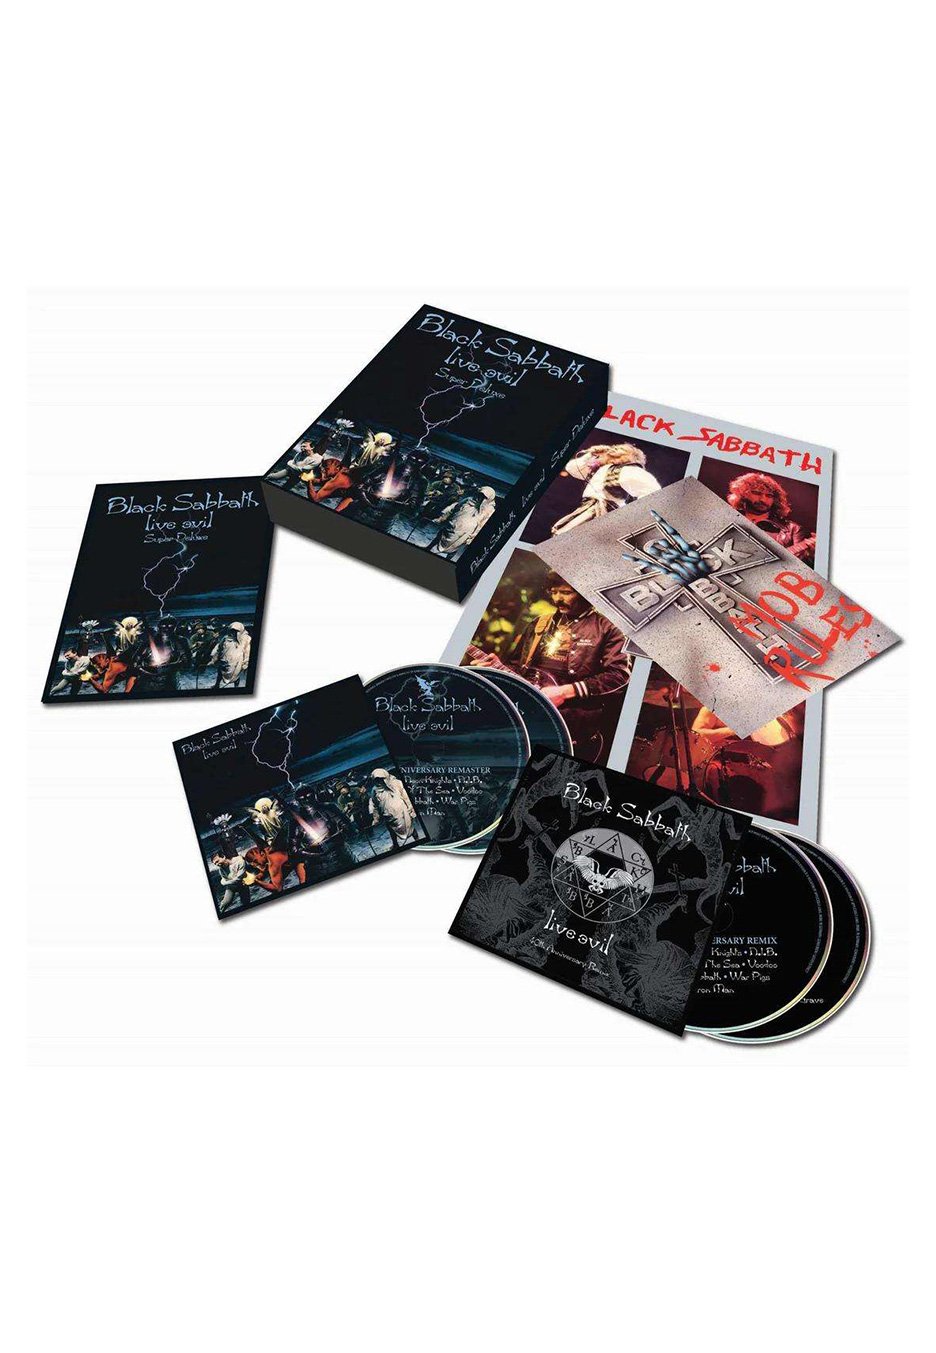 Black Sabbath - Live Evil (Super Deluxe 40th Anniversary Edition) - 4 CD